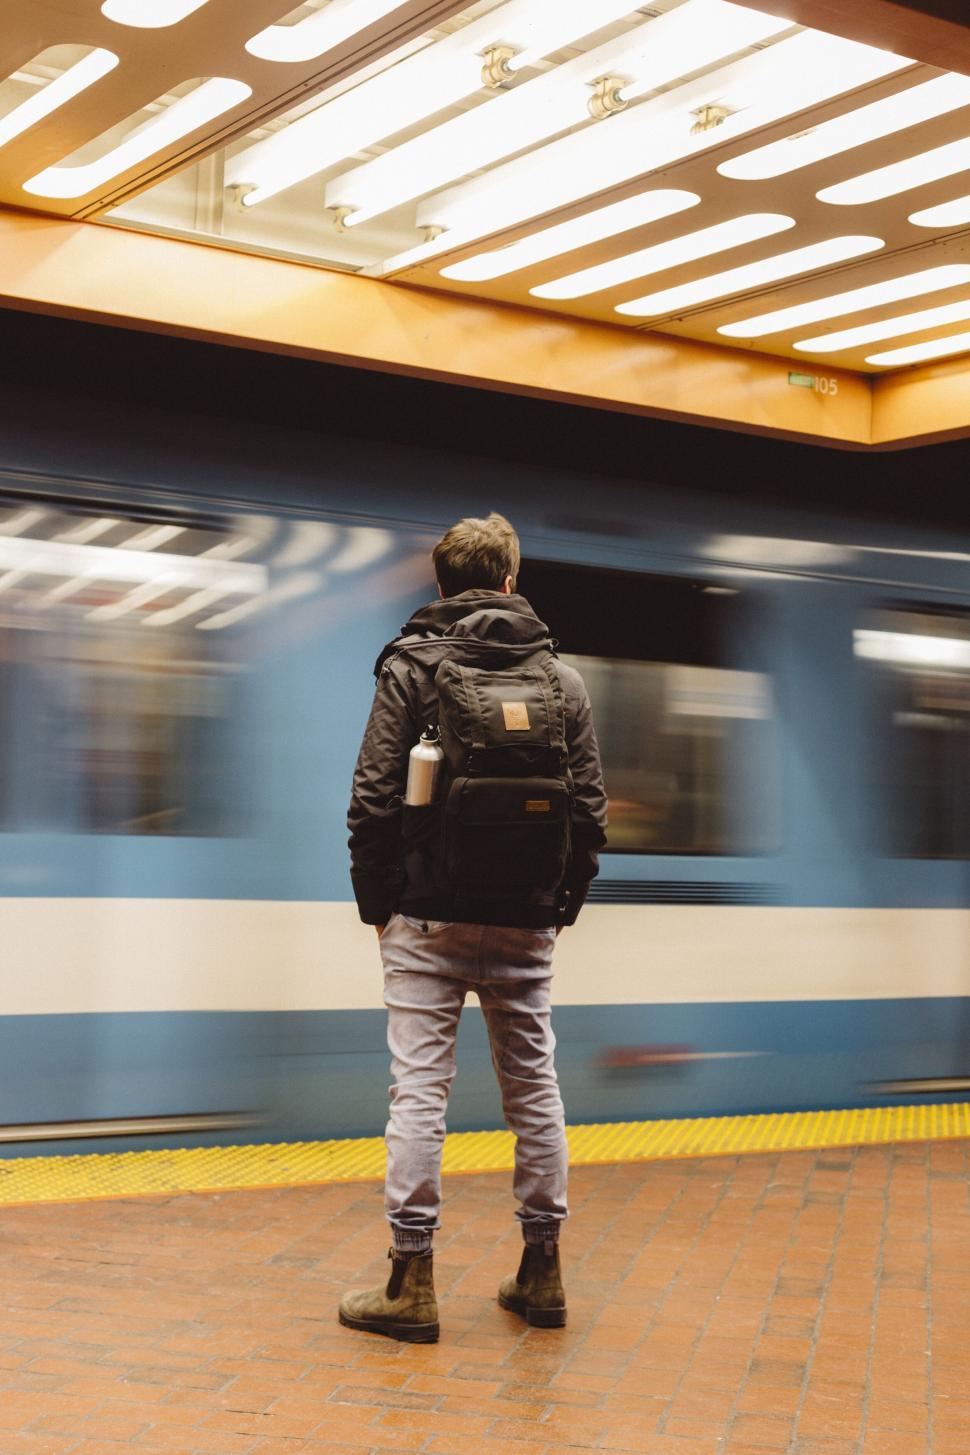 Free Image of Man waiting for train at subway station 